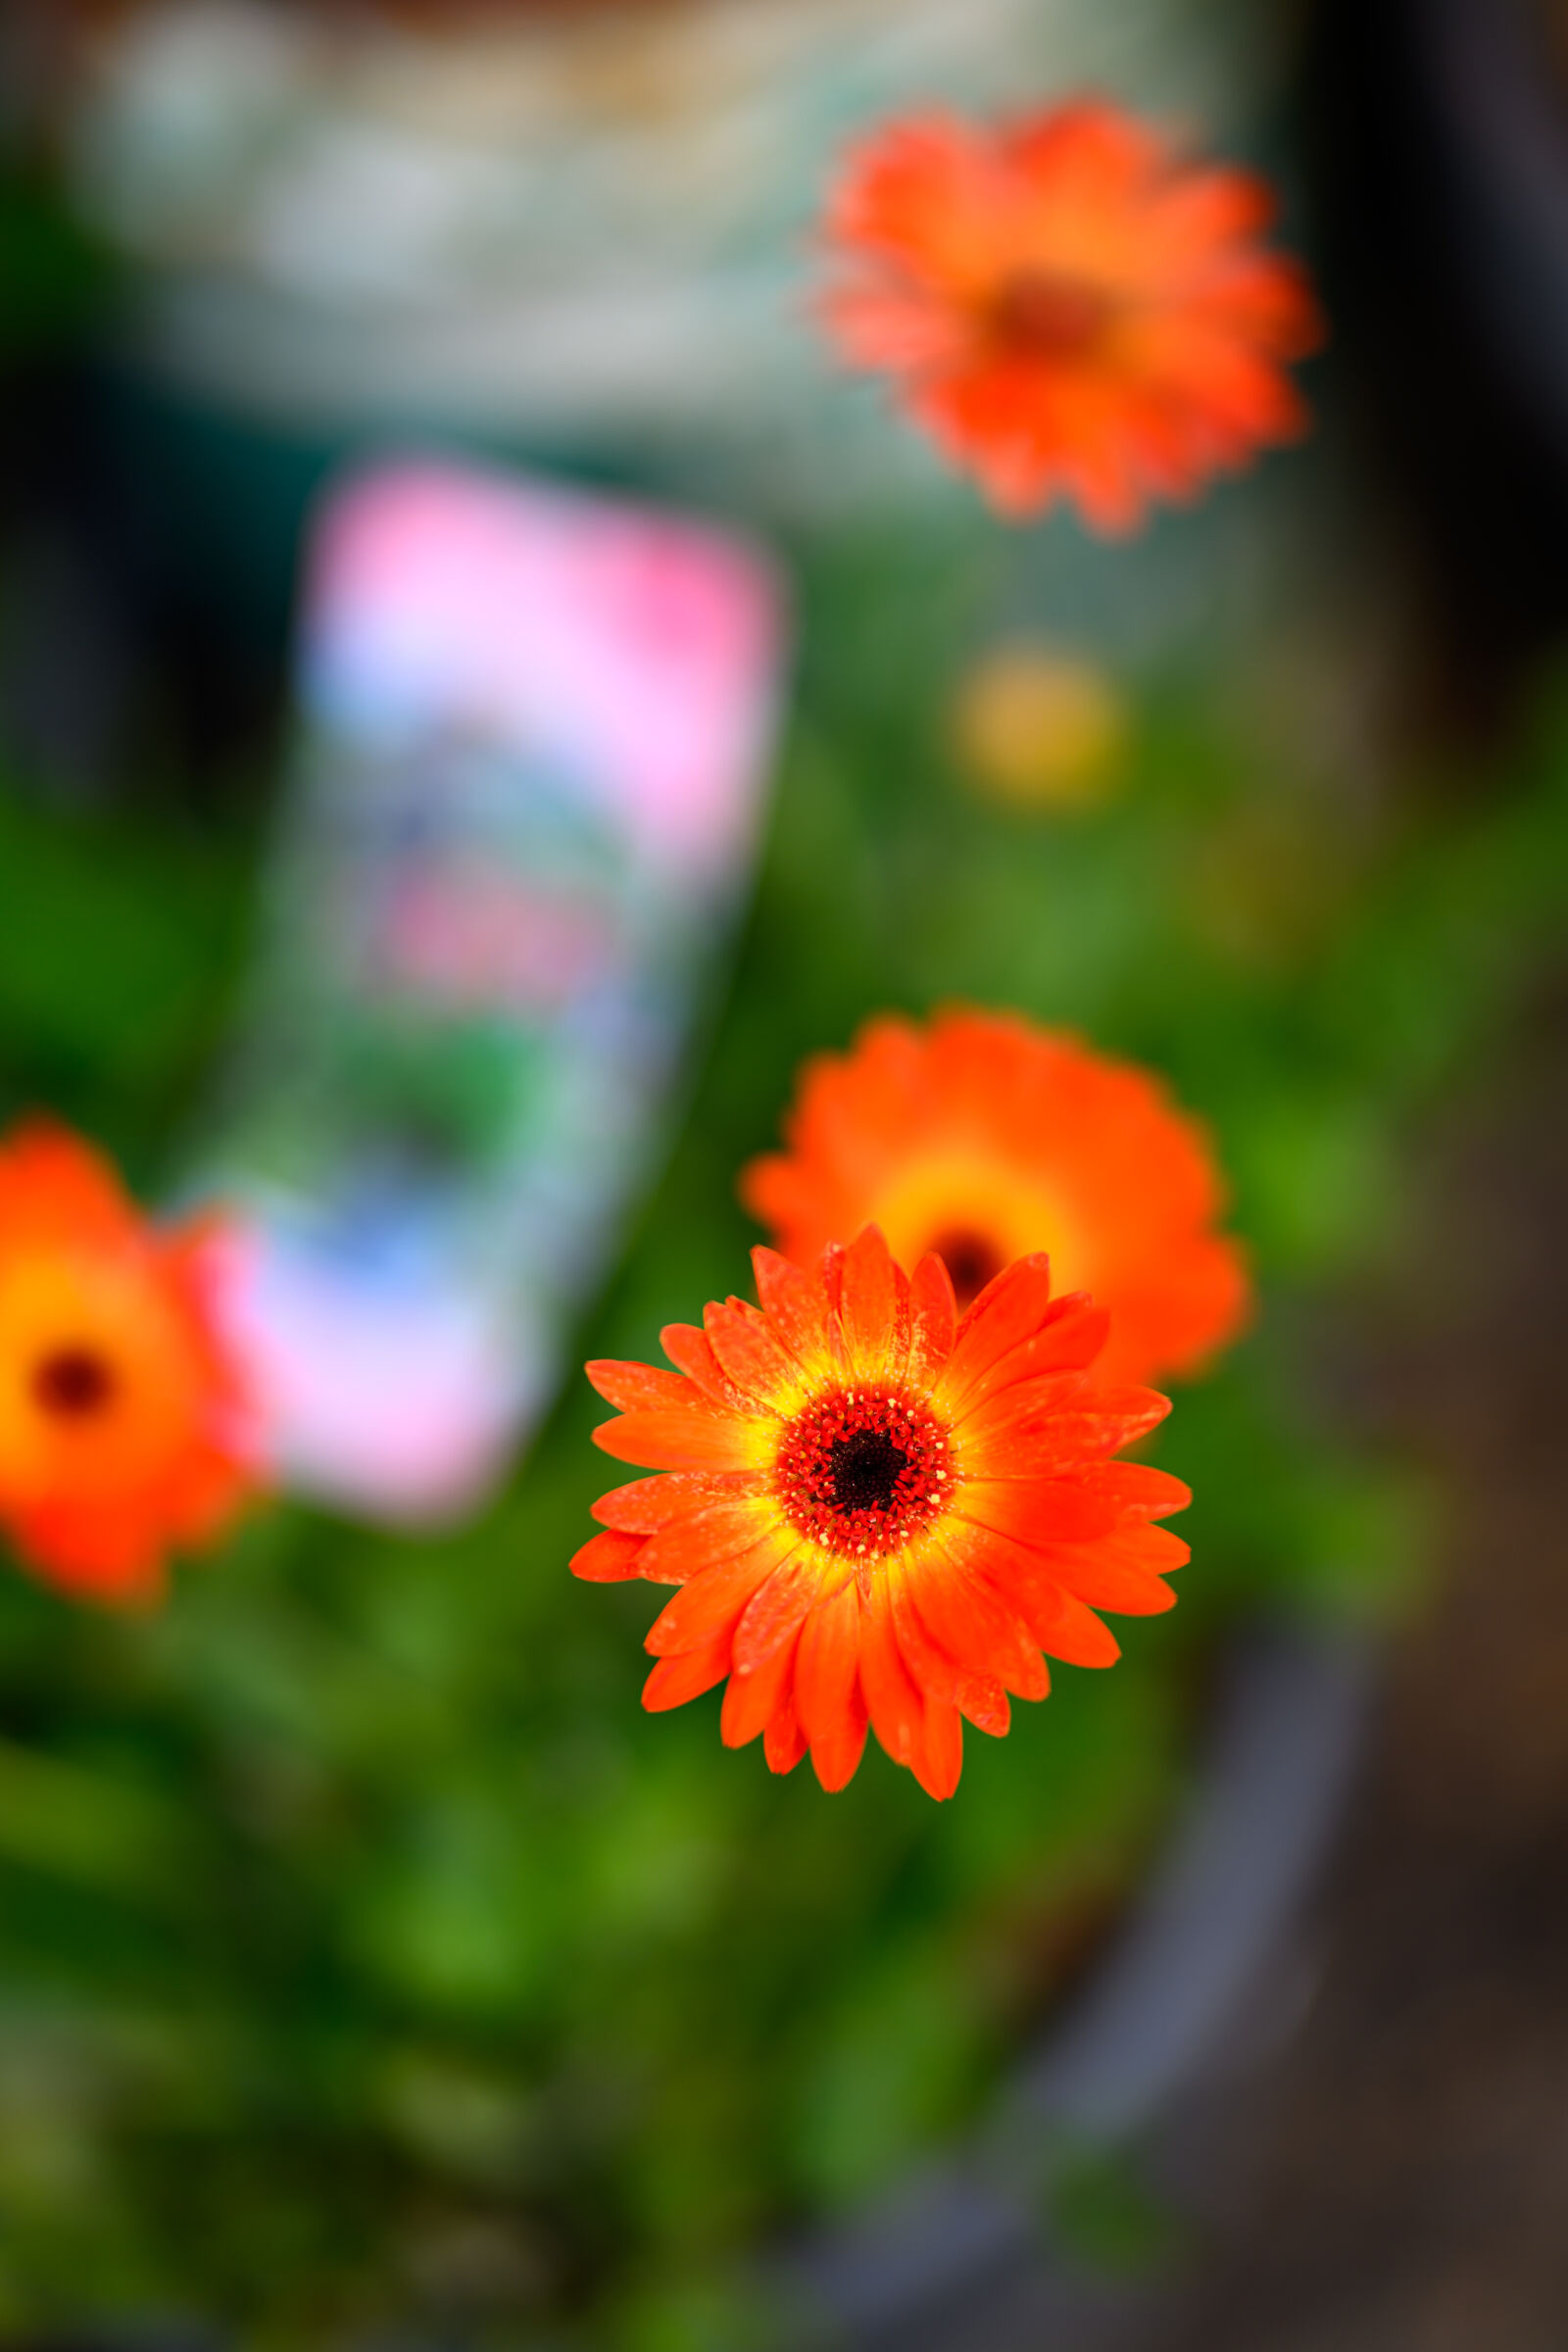 Nikon Z8 sample photo. Flower bokeh photography